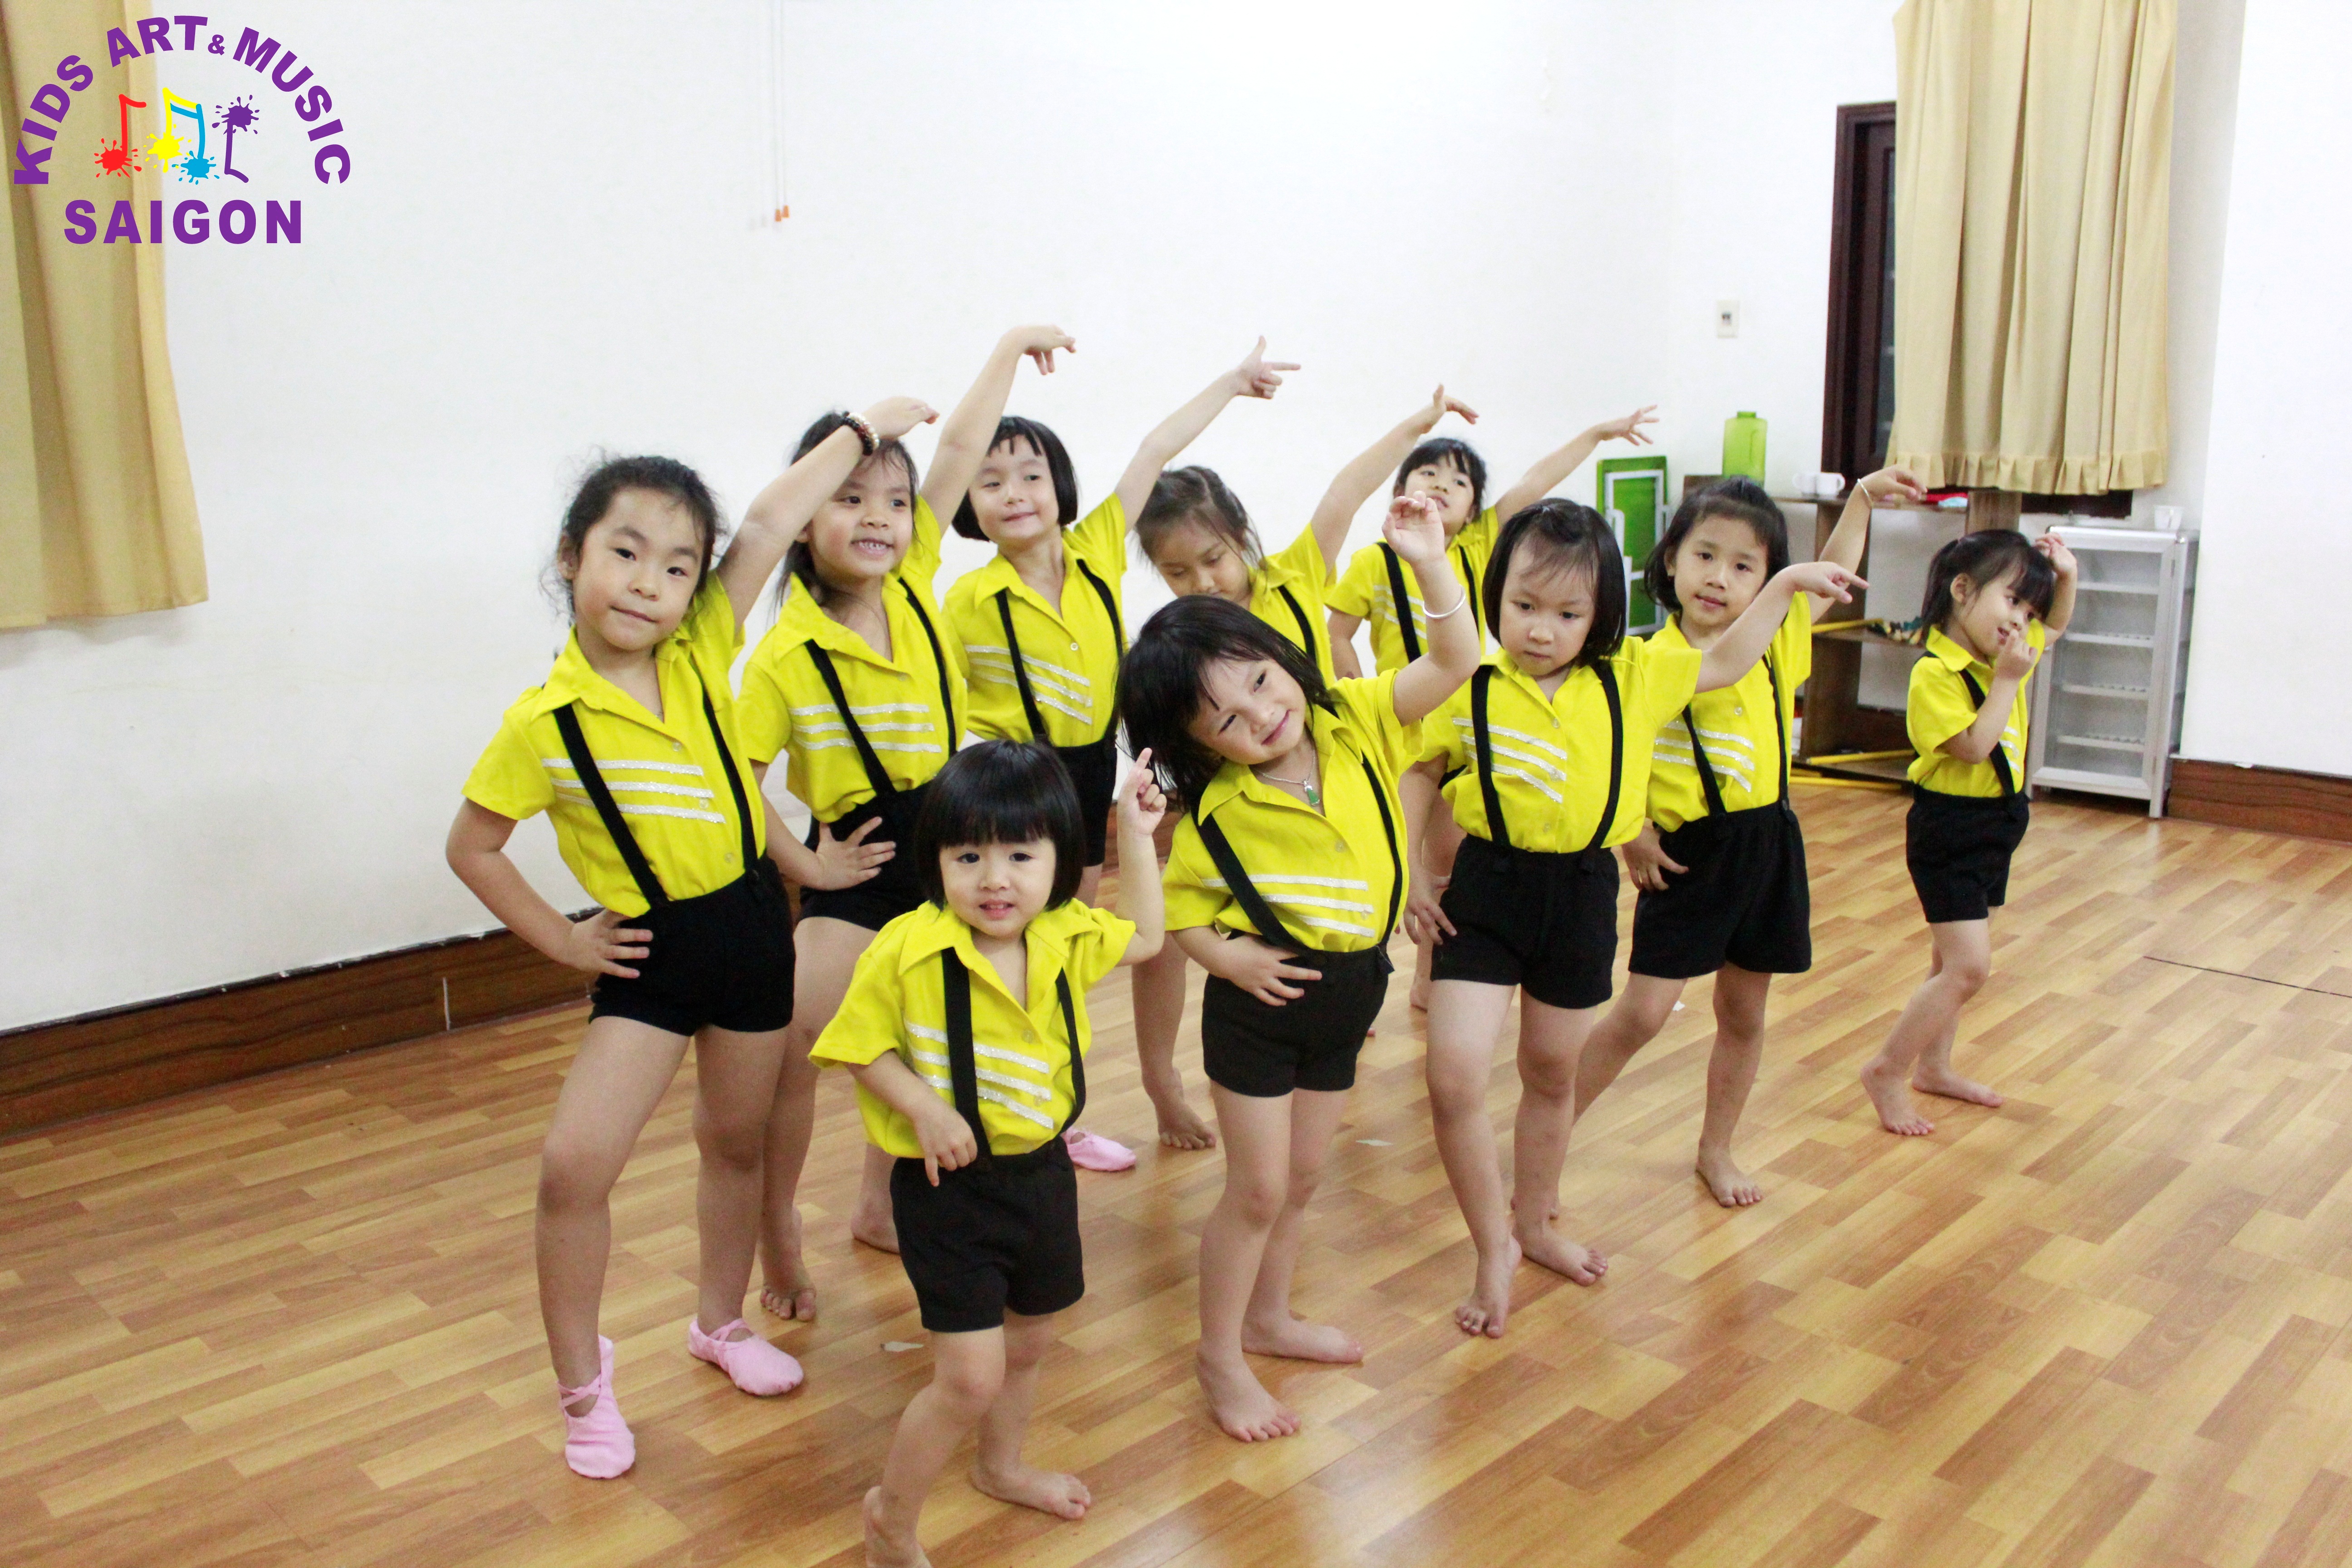 Tìm kiếm trung tâm dạy nhảy aerobic cho bé uy tín và chất lượng 